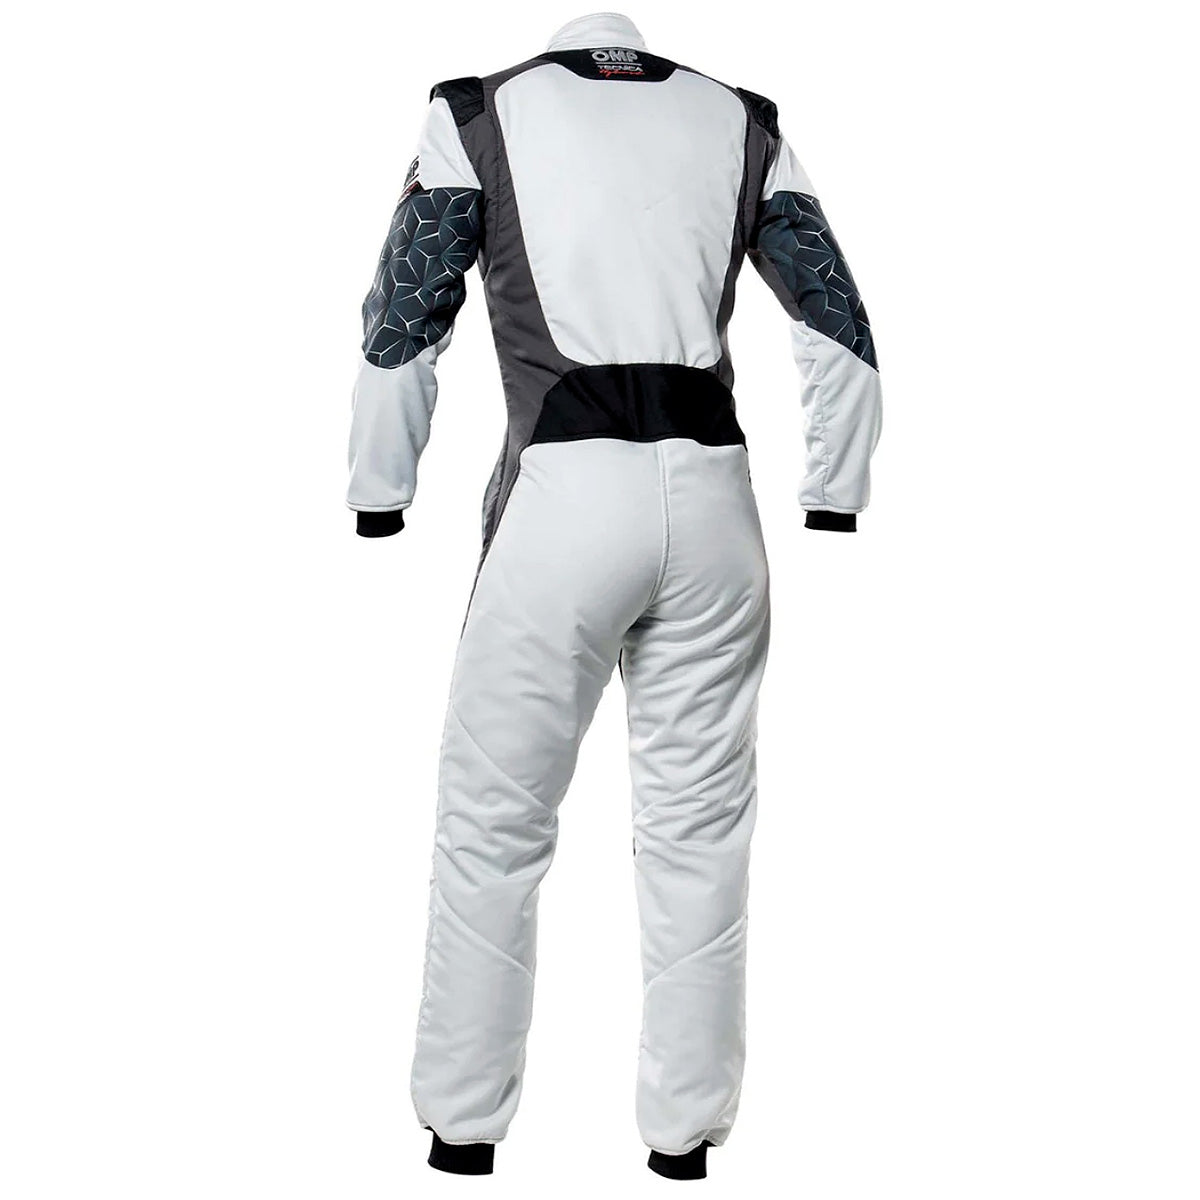 OMP Tecnica Hybrid Driver Suit